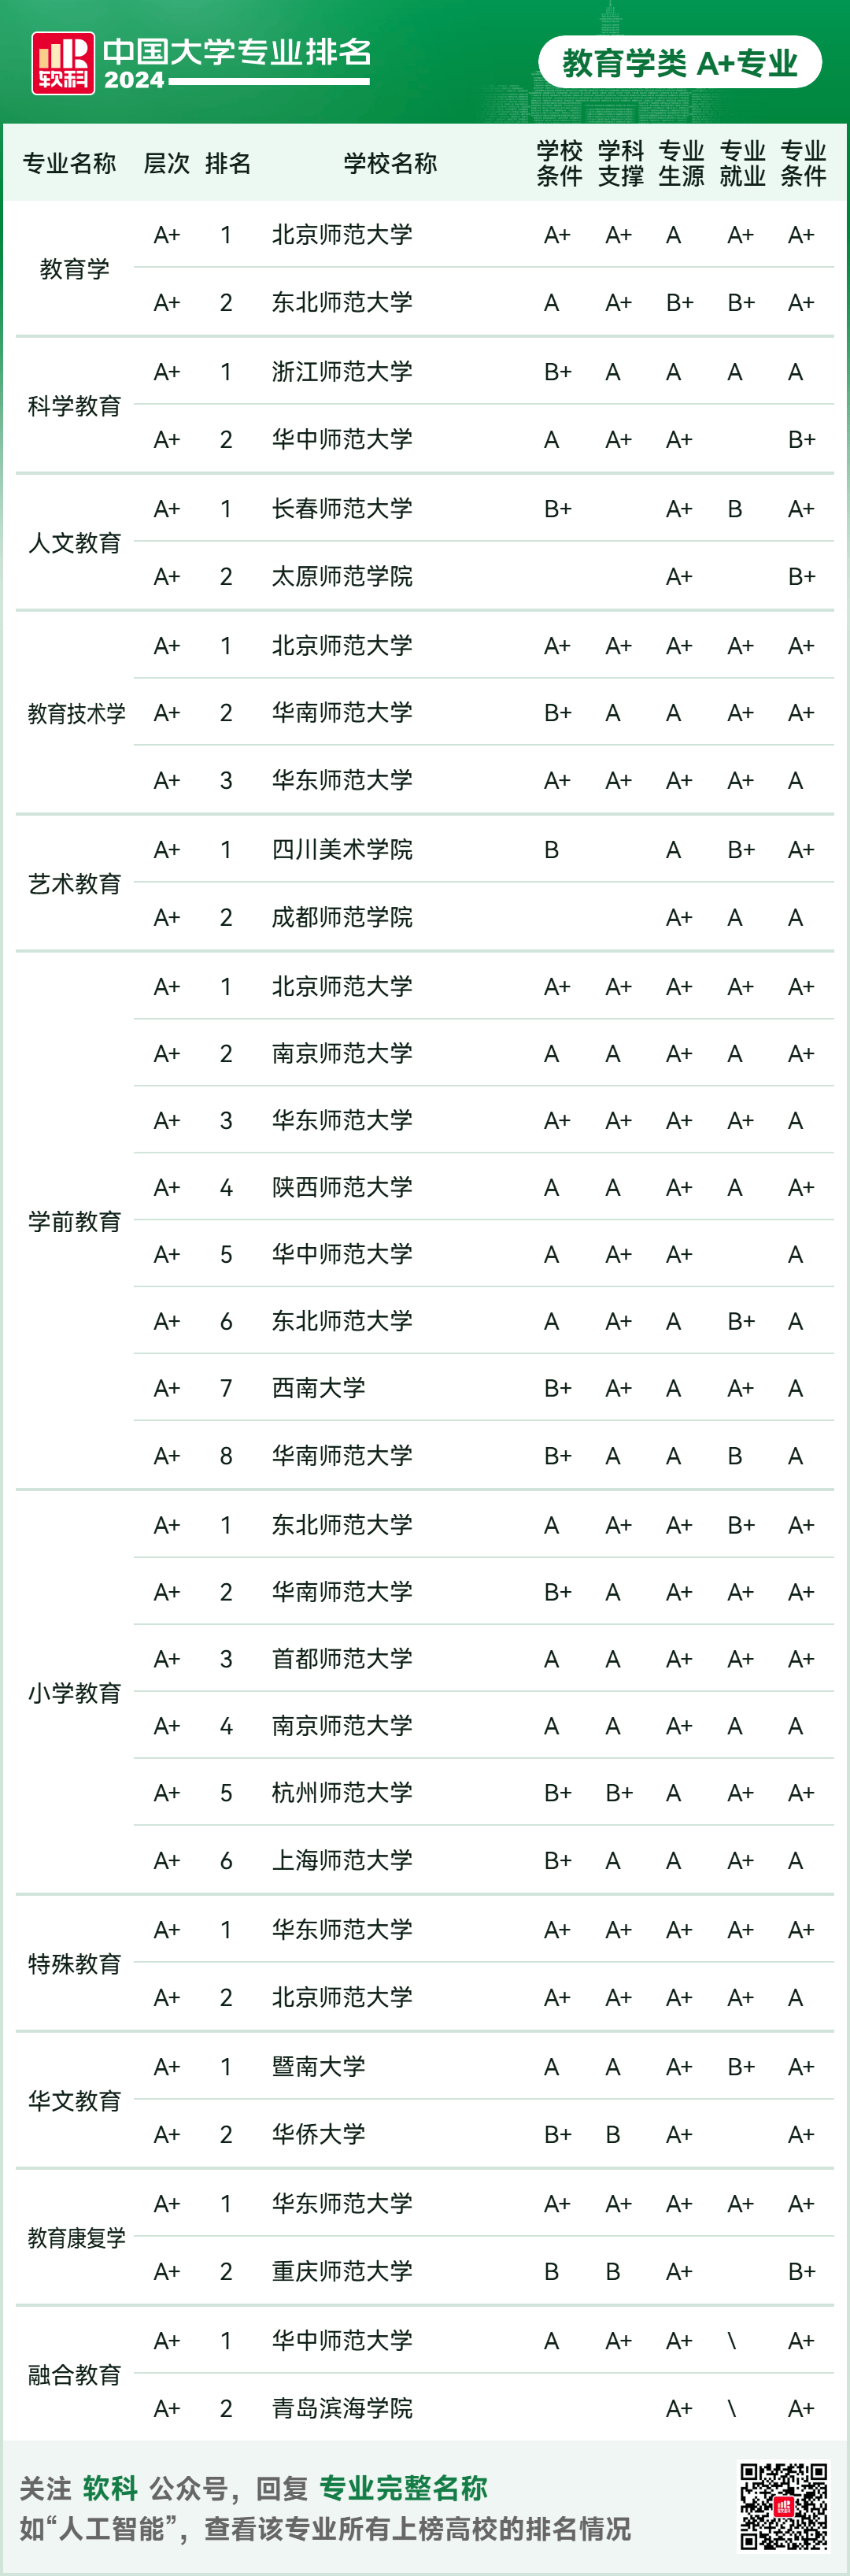 其他a 专业精度位列综合性大学前十强的依次为中国科学技术大学(59